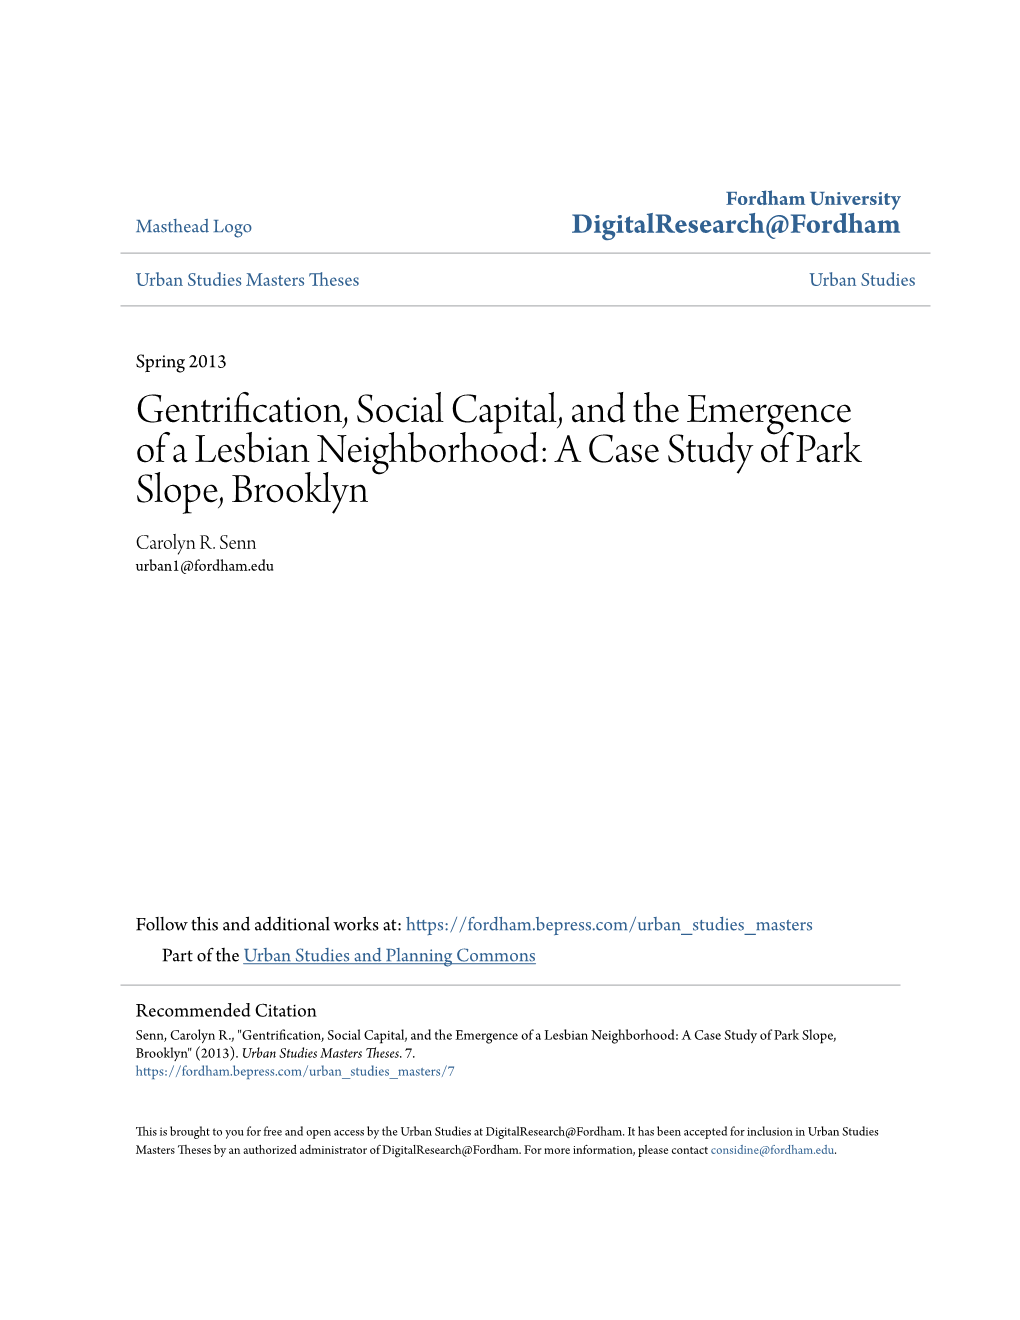 A Case Study of Park Slope, Brooklyn Carolyn R